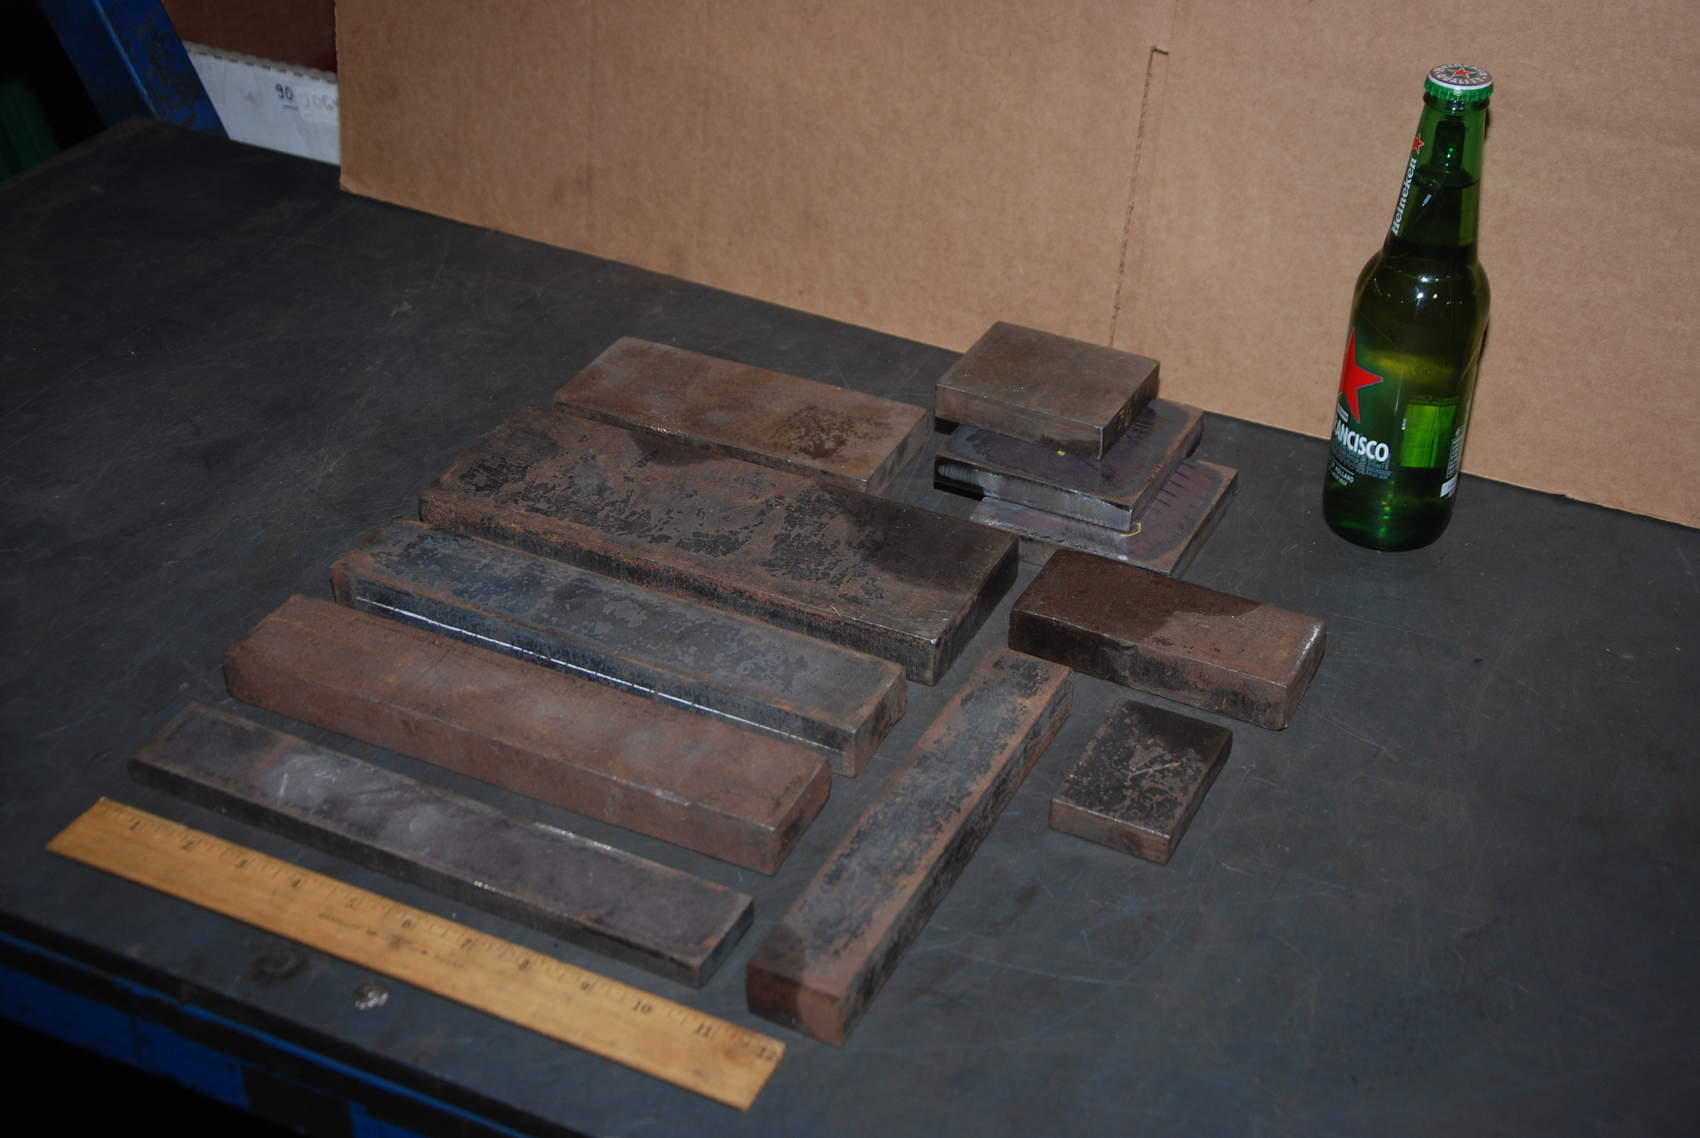 Lot of 11 steel Rectangular Bars for blacksmith anvil,45 lbs